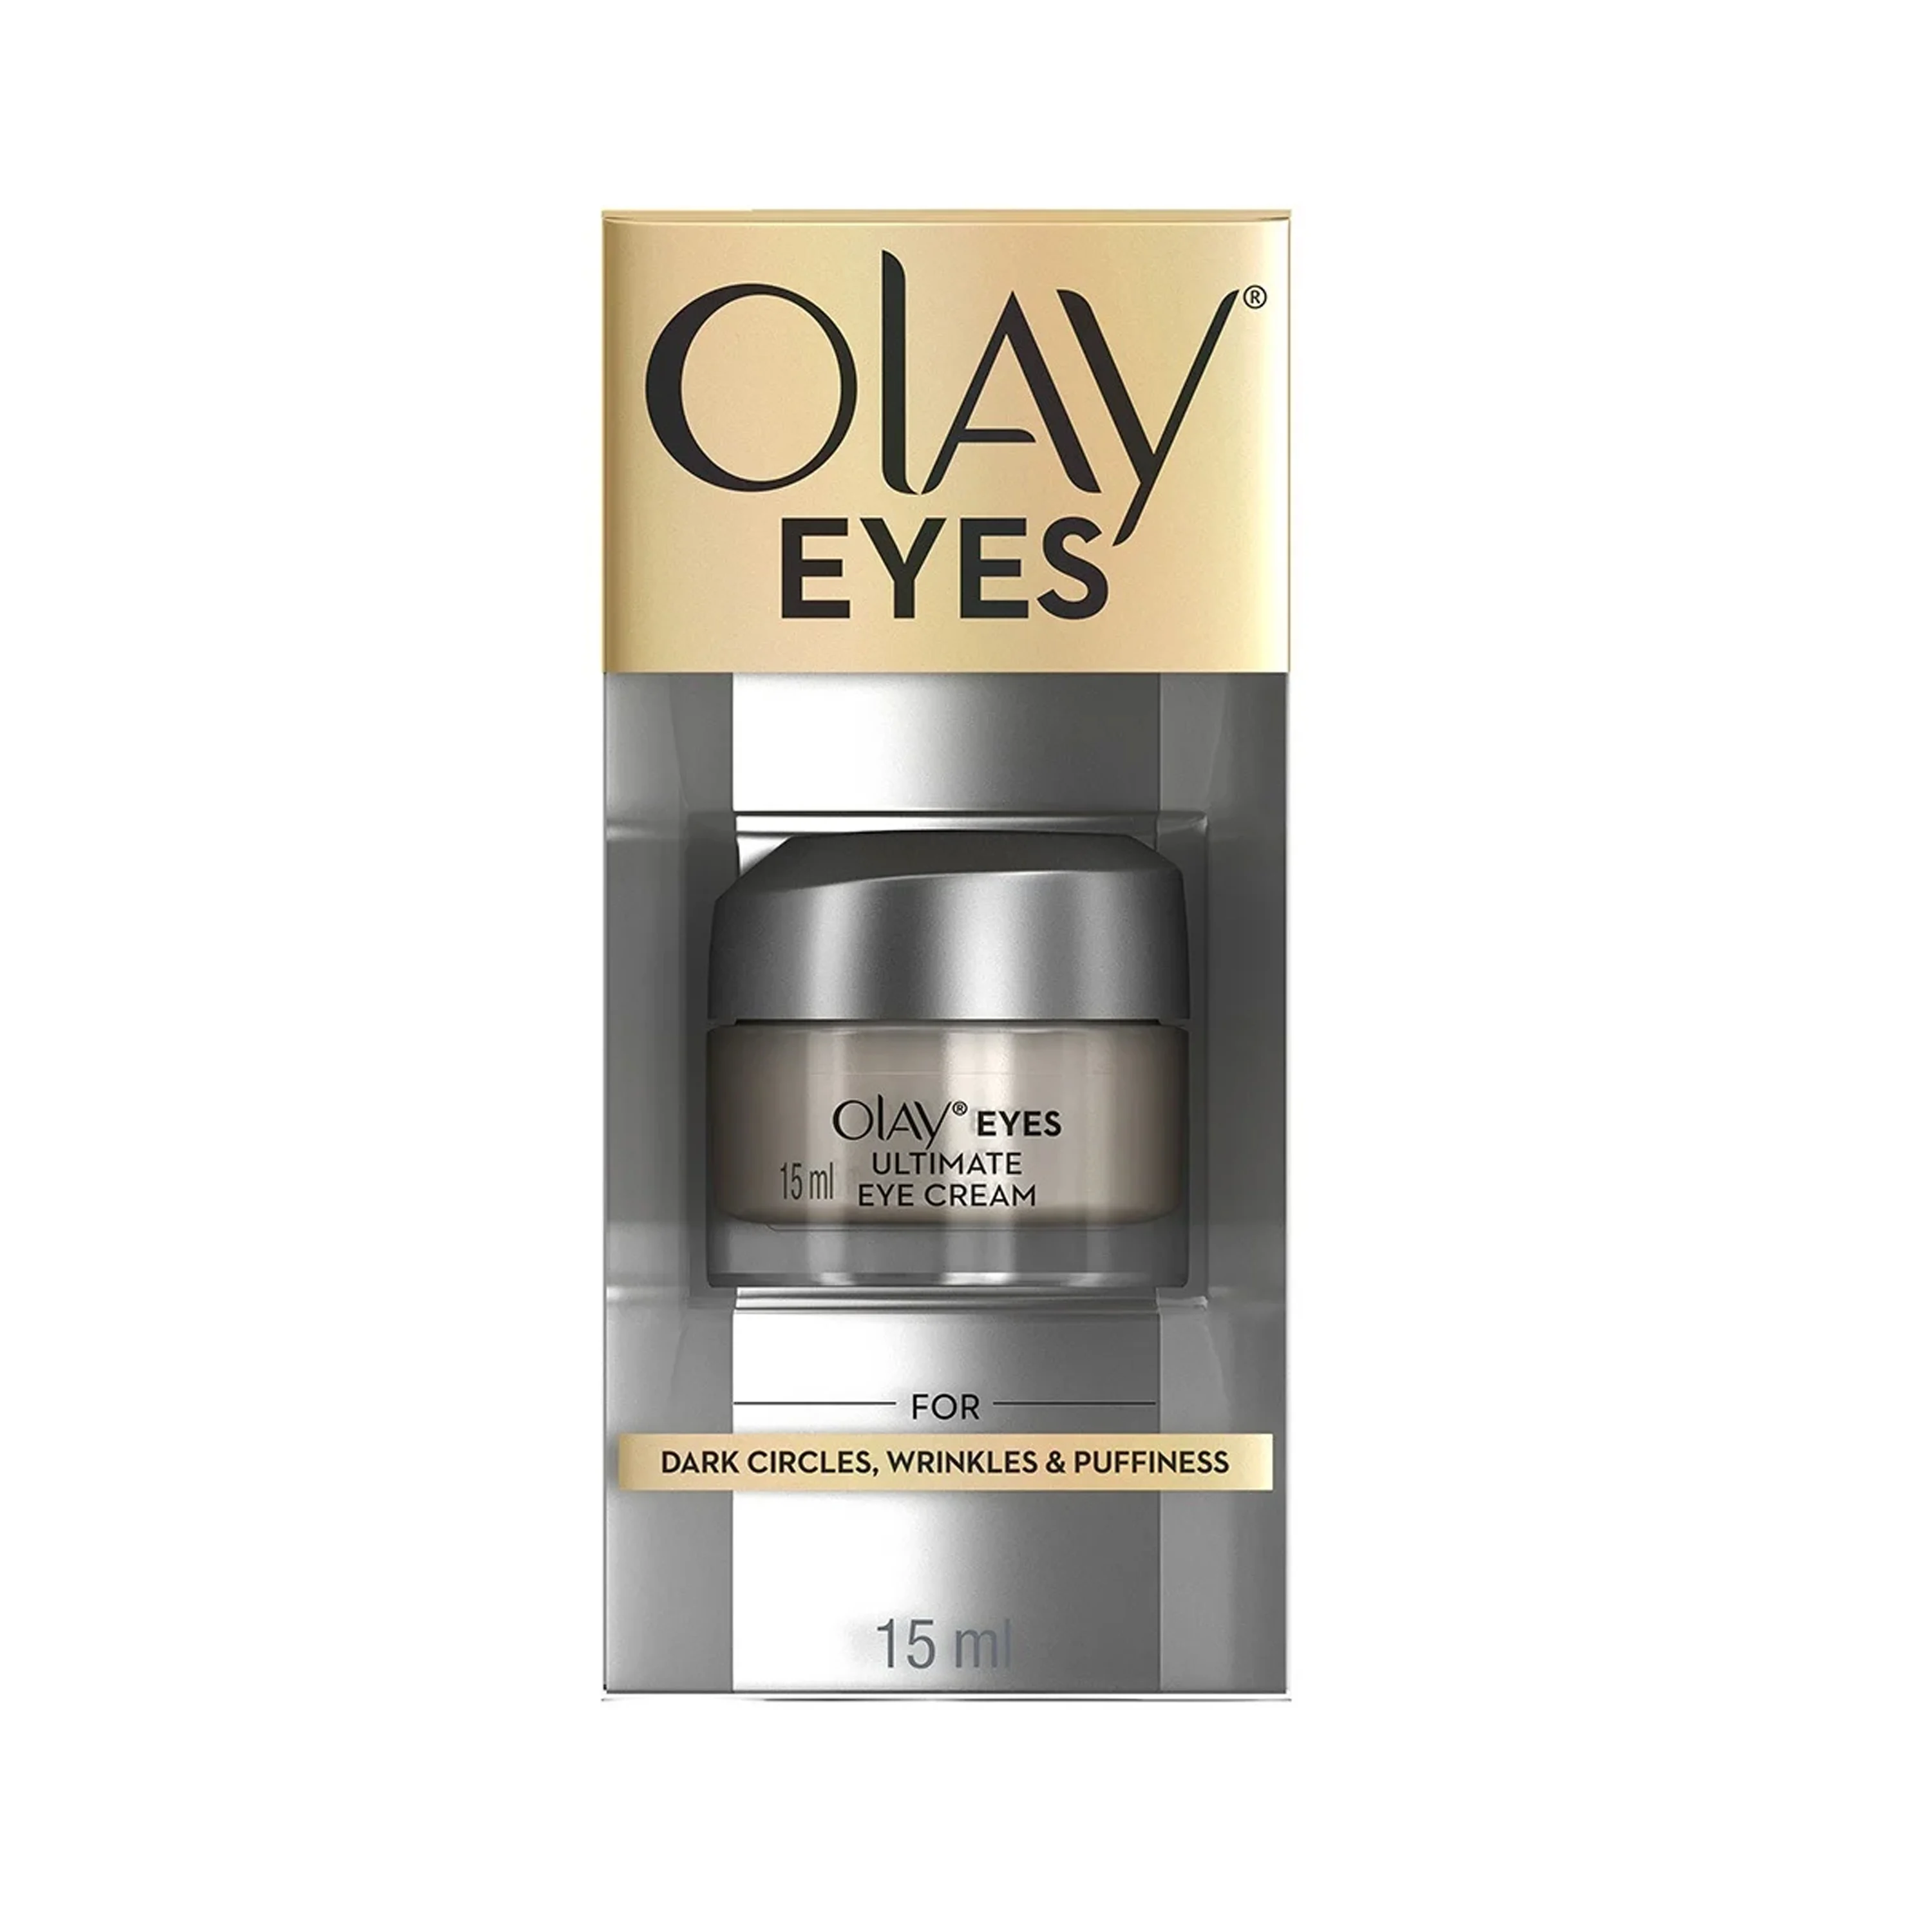 Olay Eyes Ultimate Eye Cream Image2